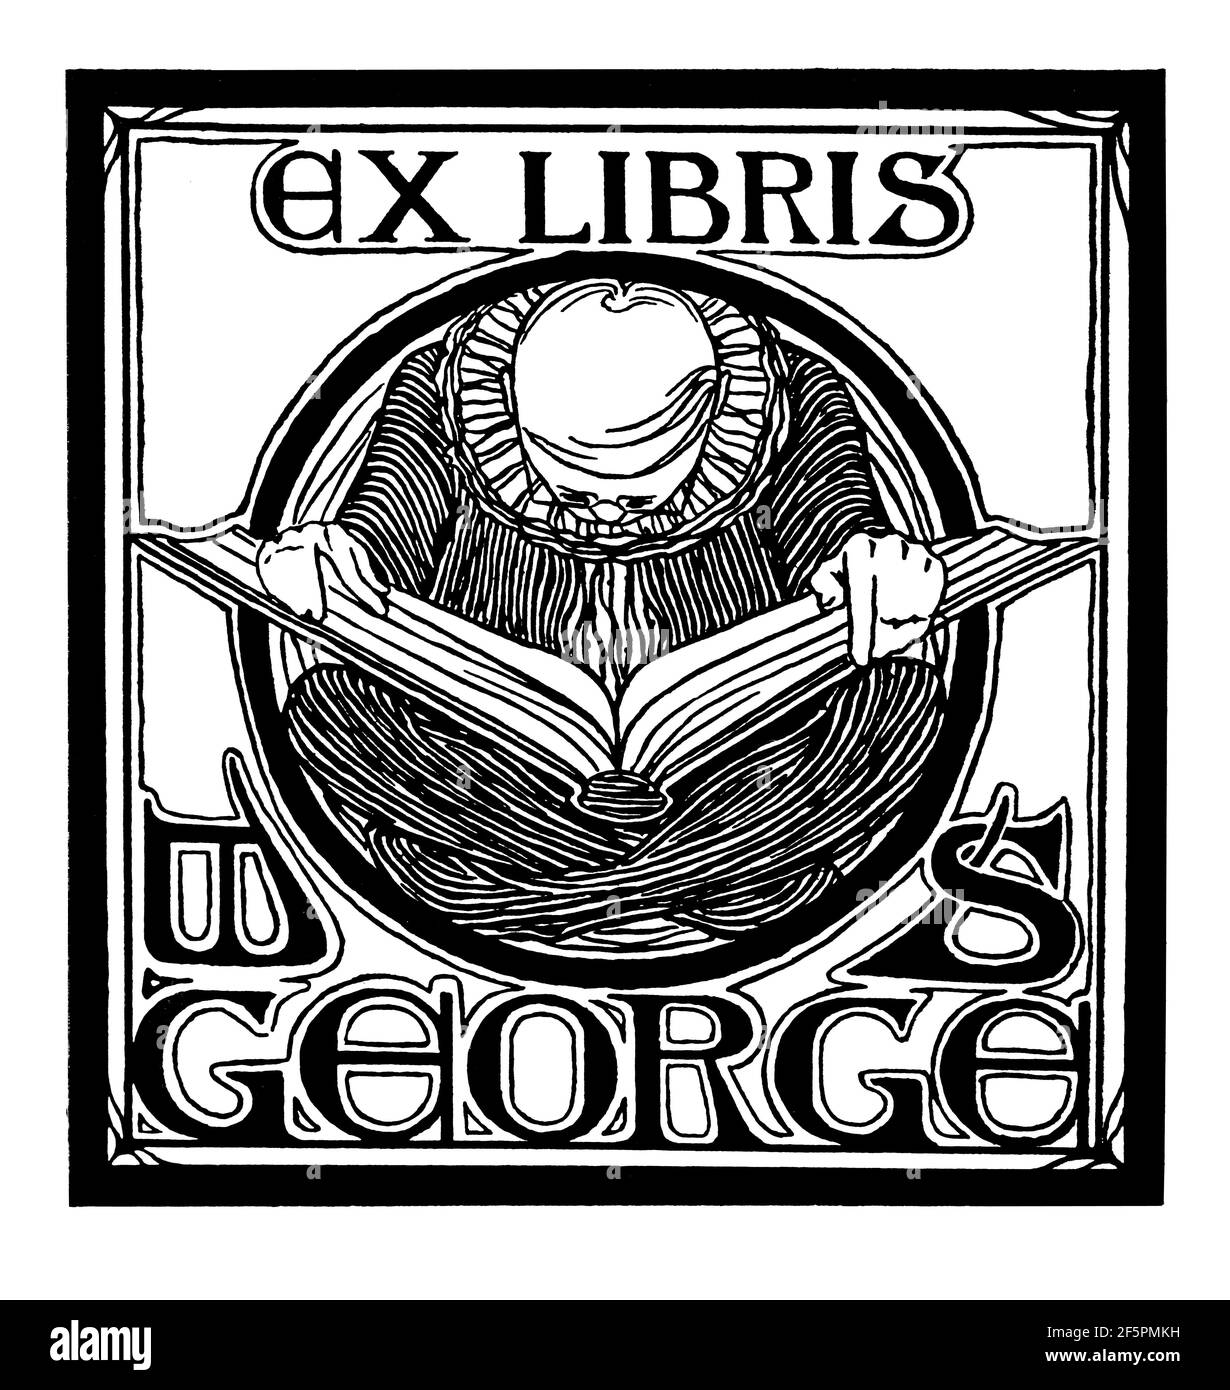 Diseño de librería Art Nouveau para W S George por Walter Buckley Pearson, desde 1901 The Studio una revista ilustrada de arte fino y aplicado Foto de stock